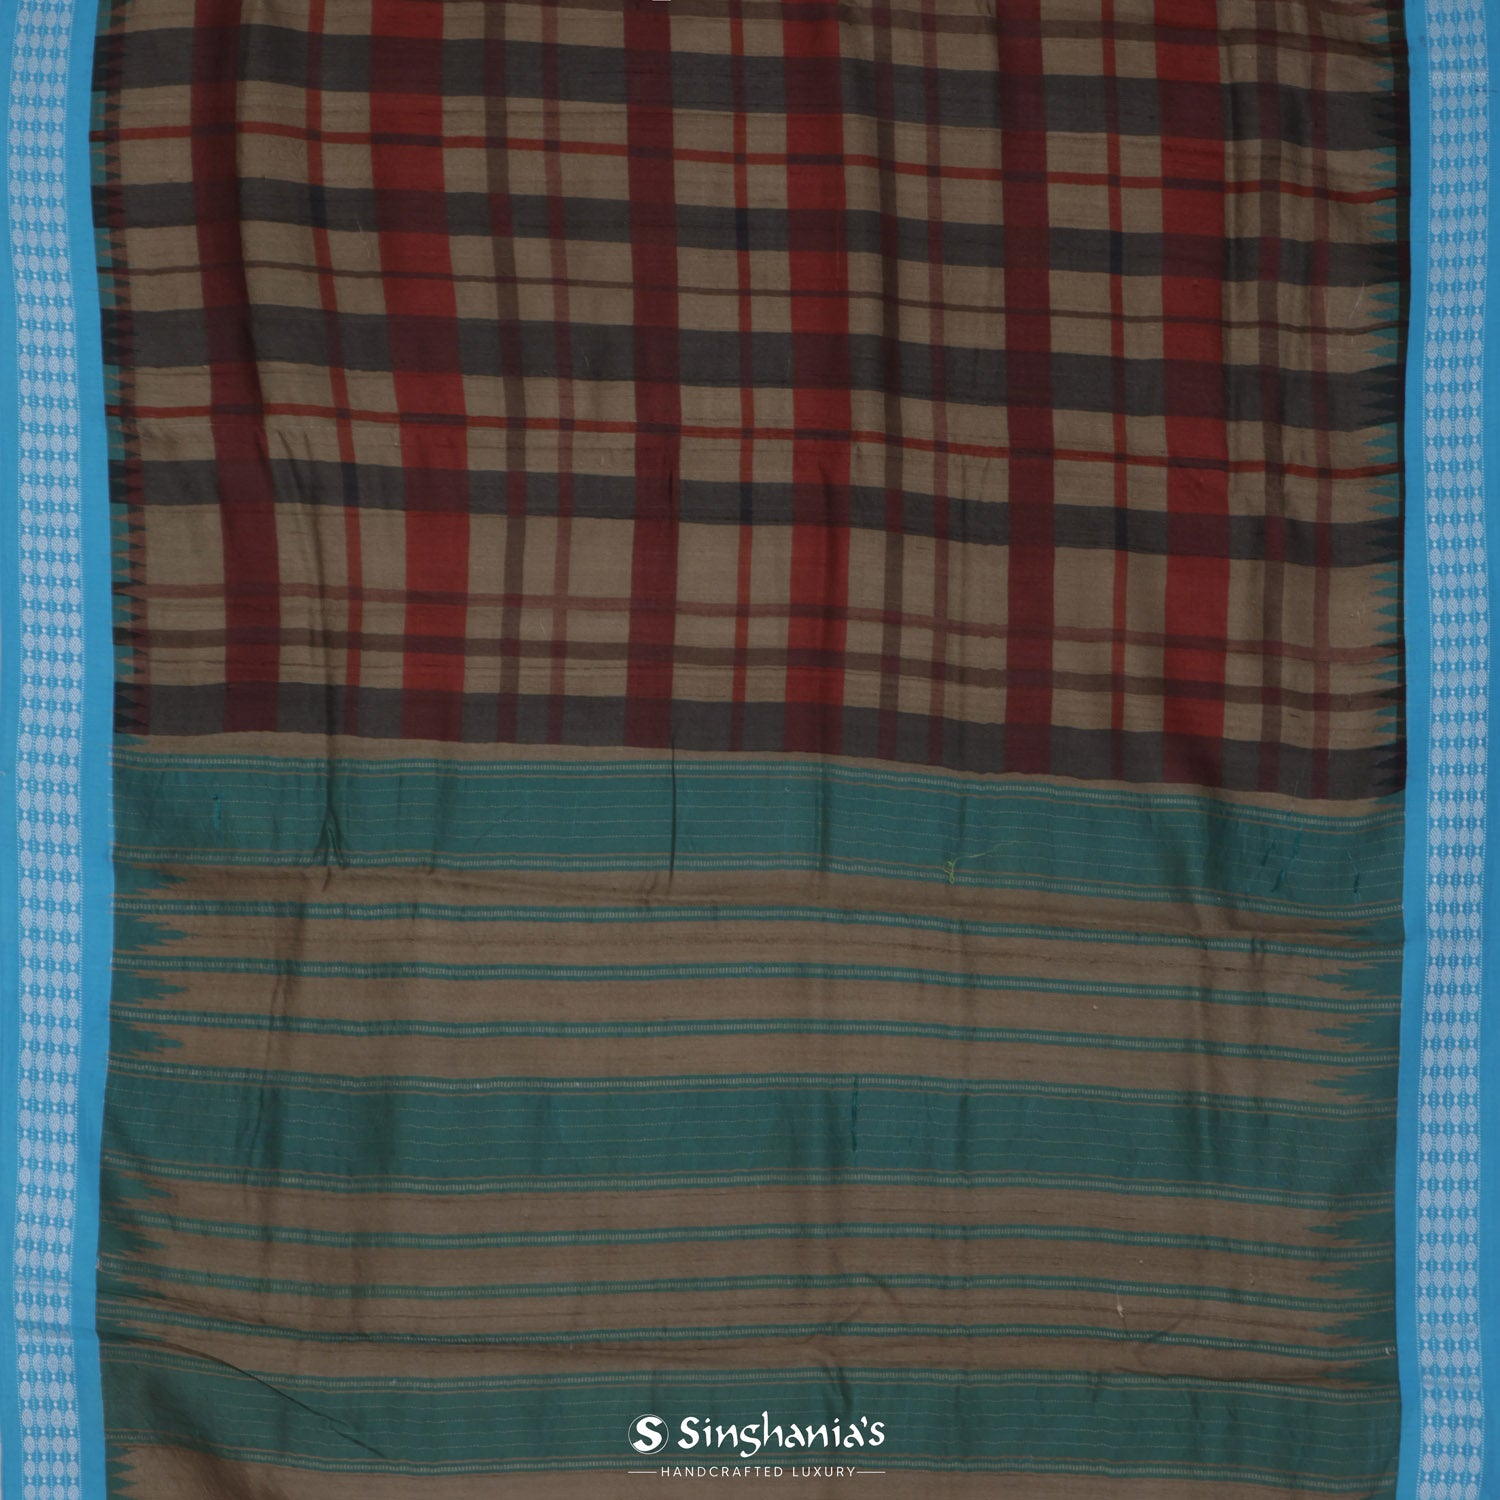 Dark Beige Printed Tussar Saree With Checks Pattern